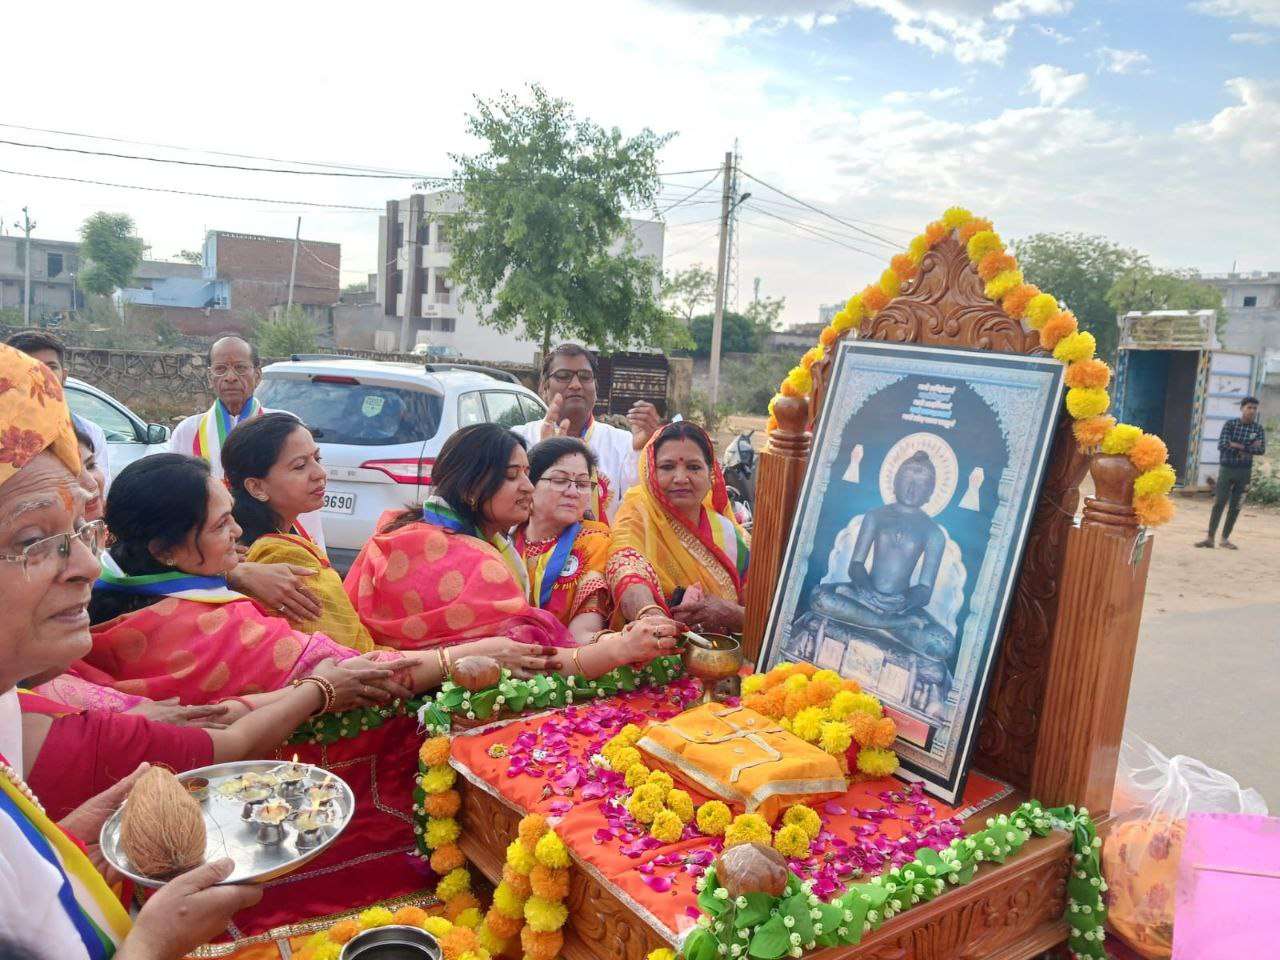 देखें फोटो: जैन धर्म के 24 वें तीर्थंकर भगवान महावीर का 2622 वां जन्म कल्याणक
महोत्सव सोमवार को